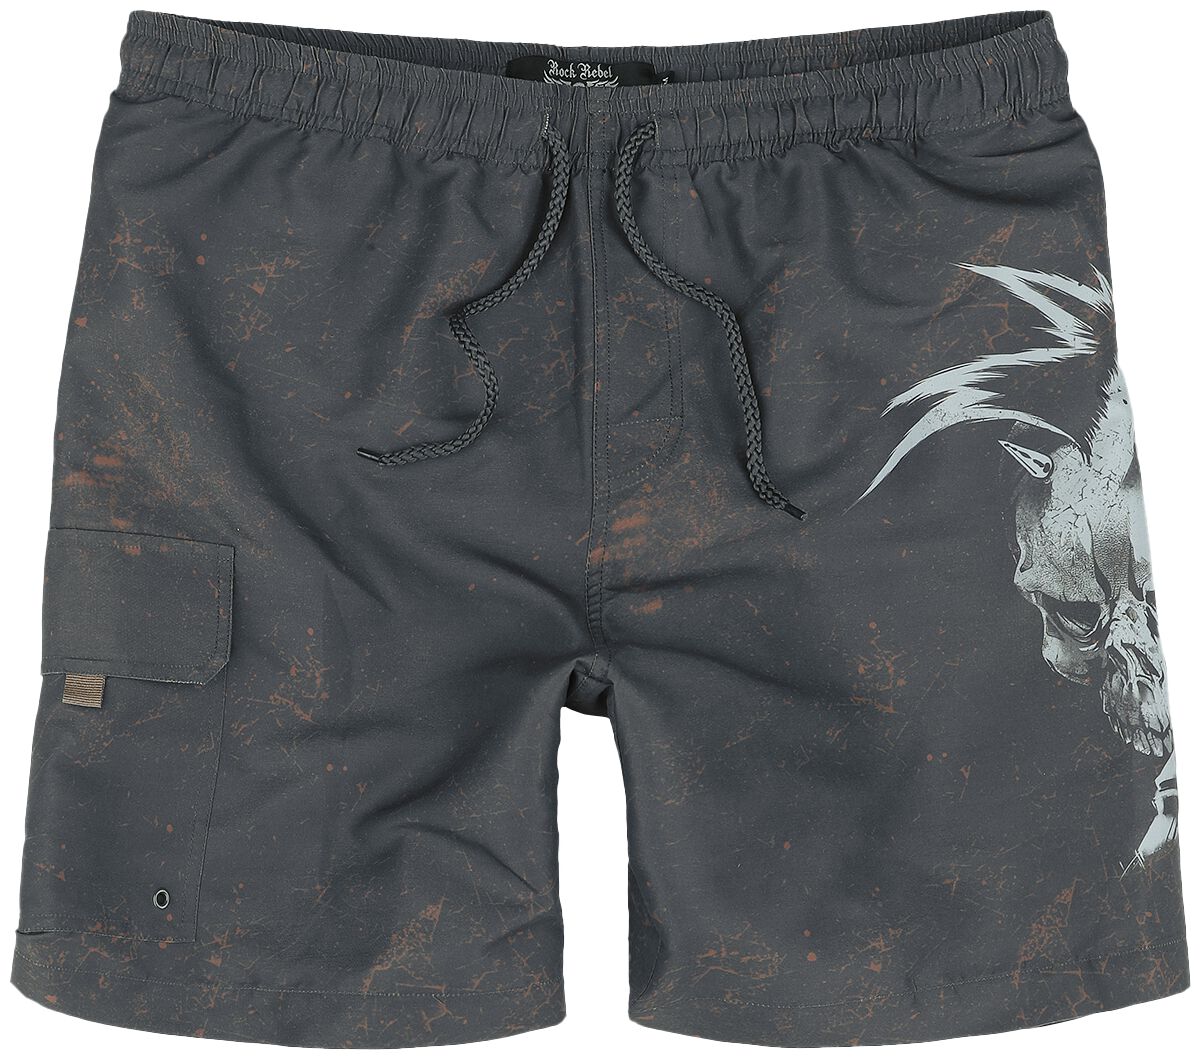 Image of Bermuda di Rock Rebel by EMP - Rock Skull Swim Shorts - S a XXL - Uomo - grigio scuro